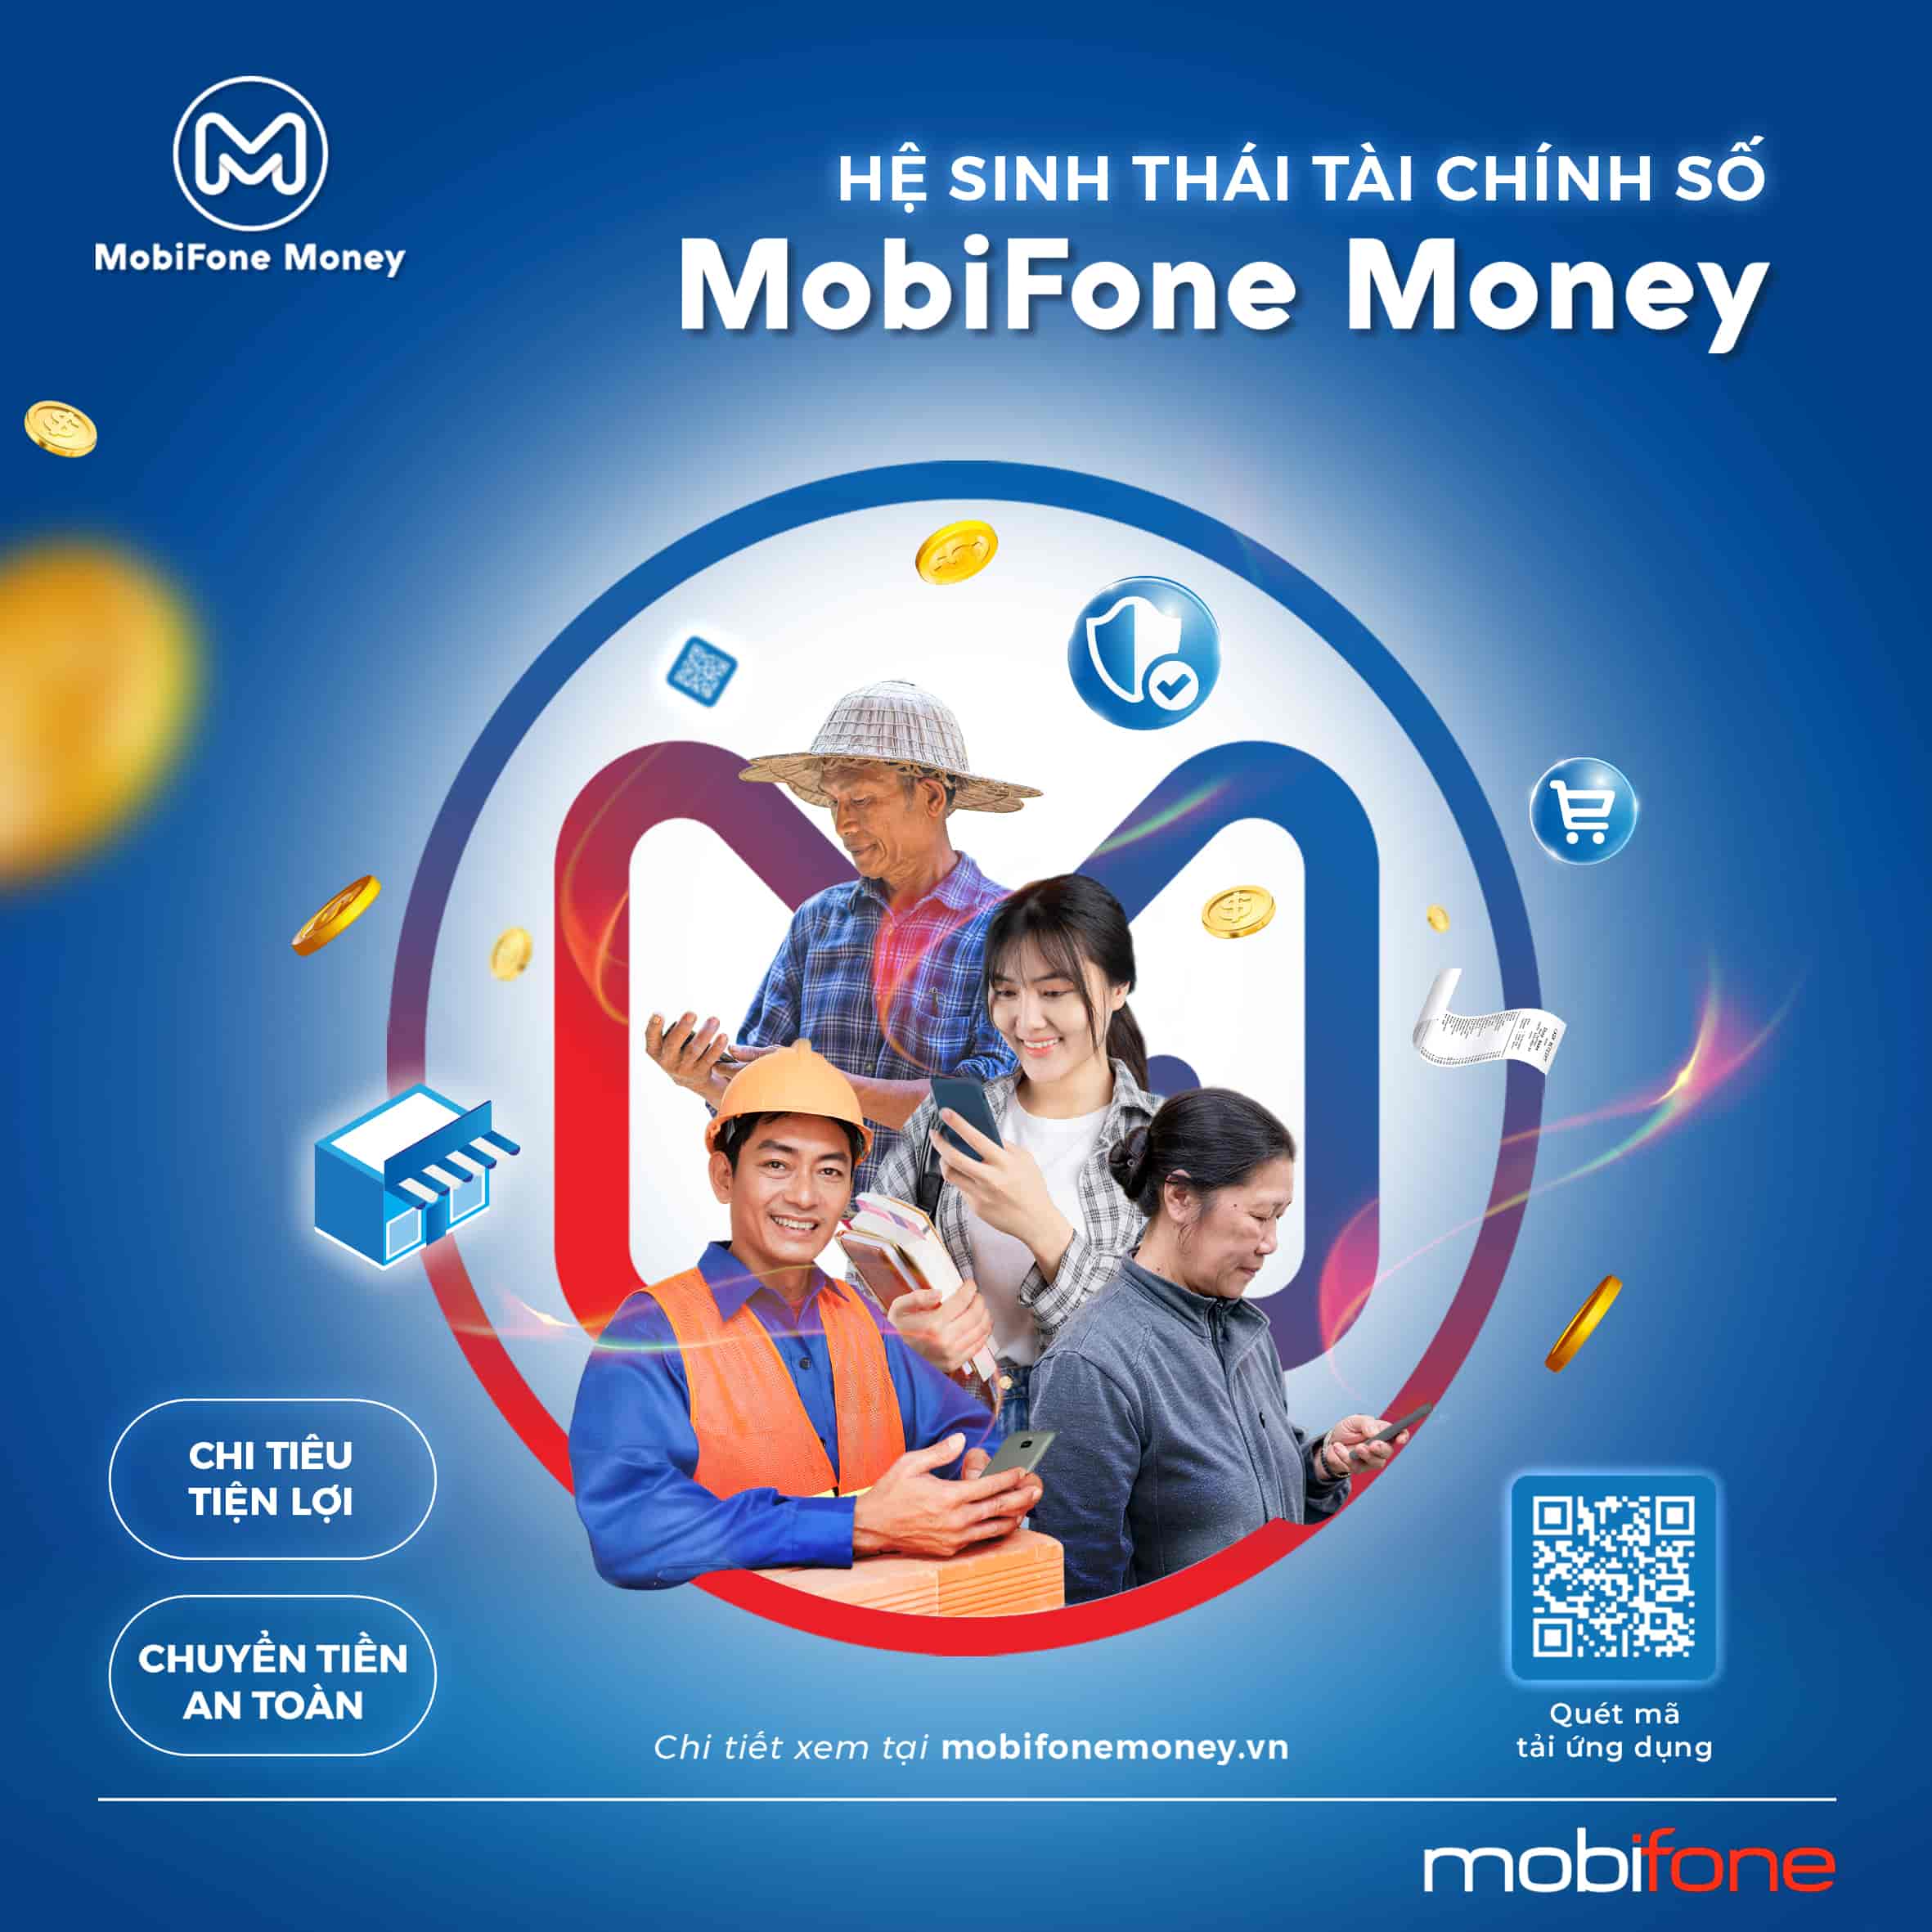 Hệ sinh thái tài chính số, mắt xích quan trọng của MobiFone có gì đặc biệt?